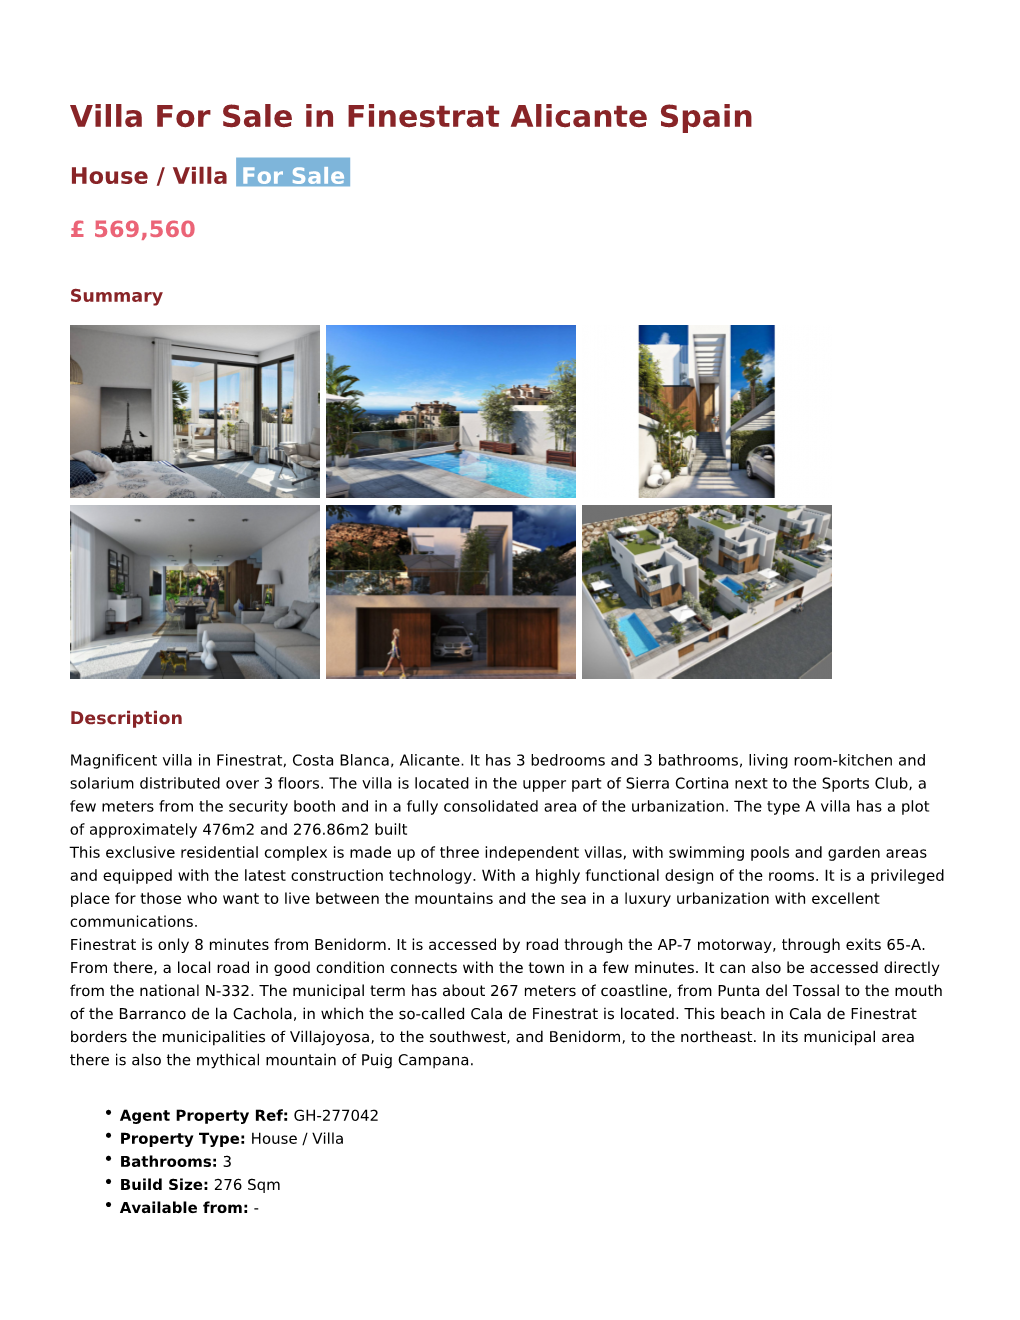 Villa for Sale in Finestrat Alicante Spain